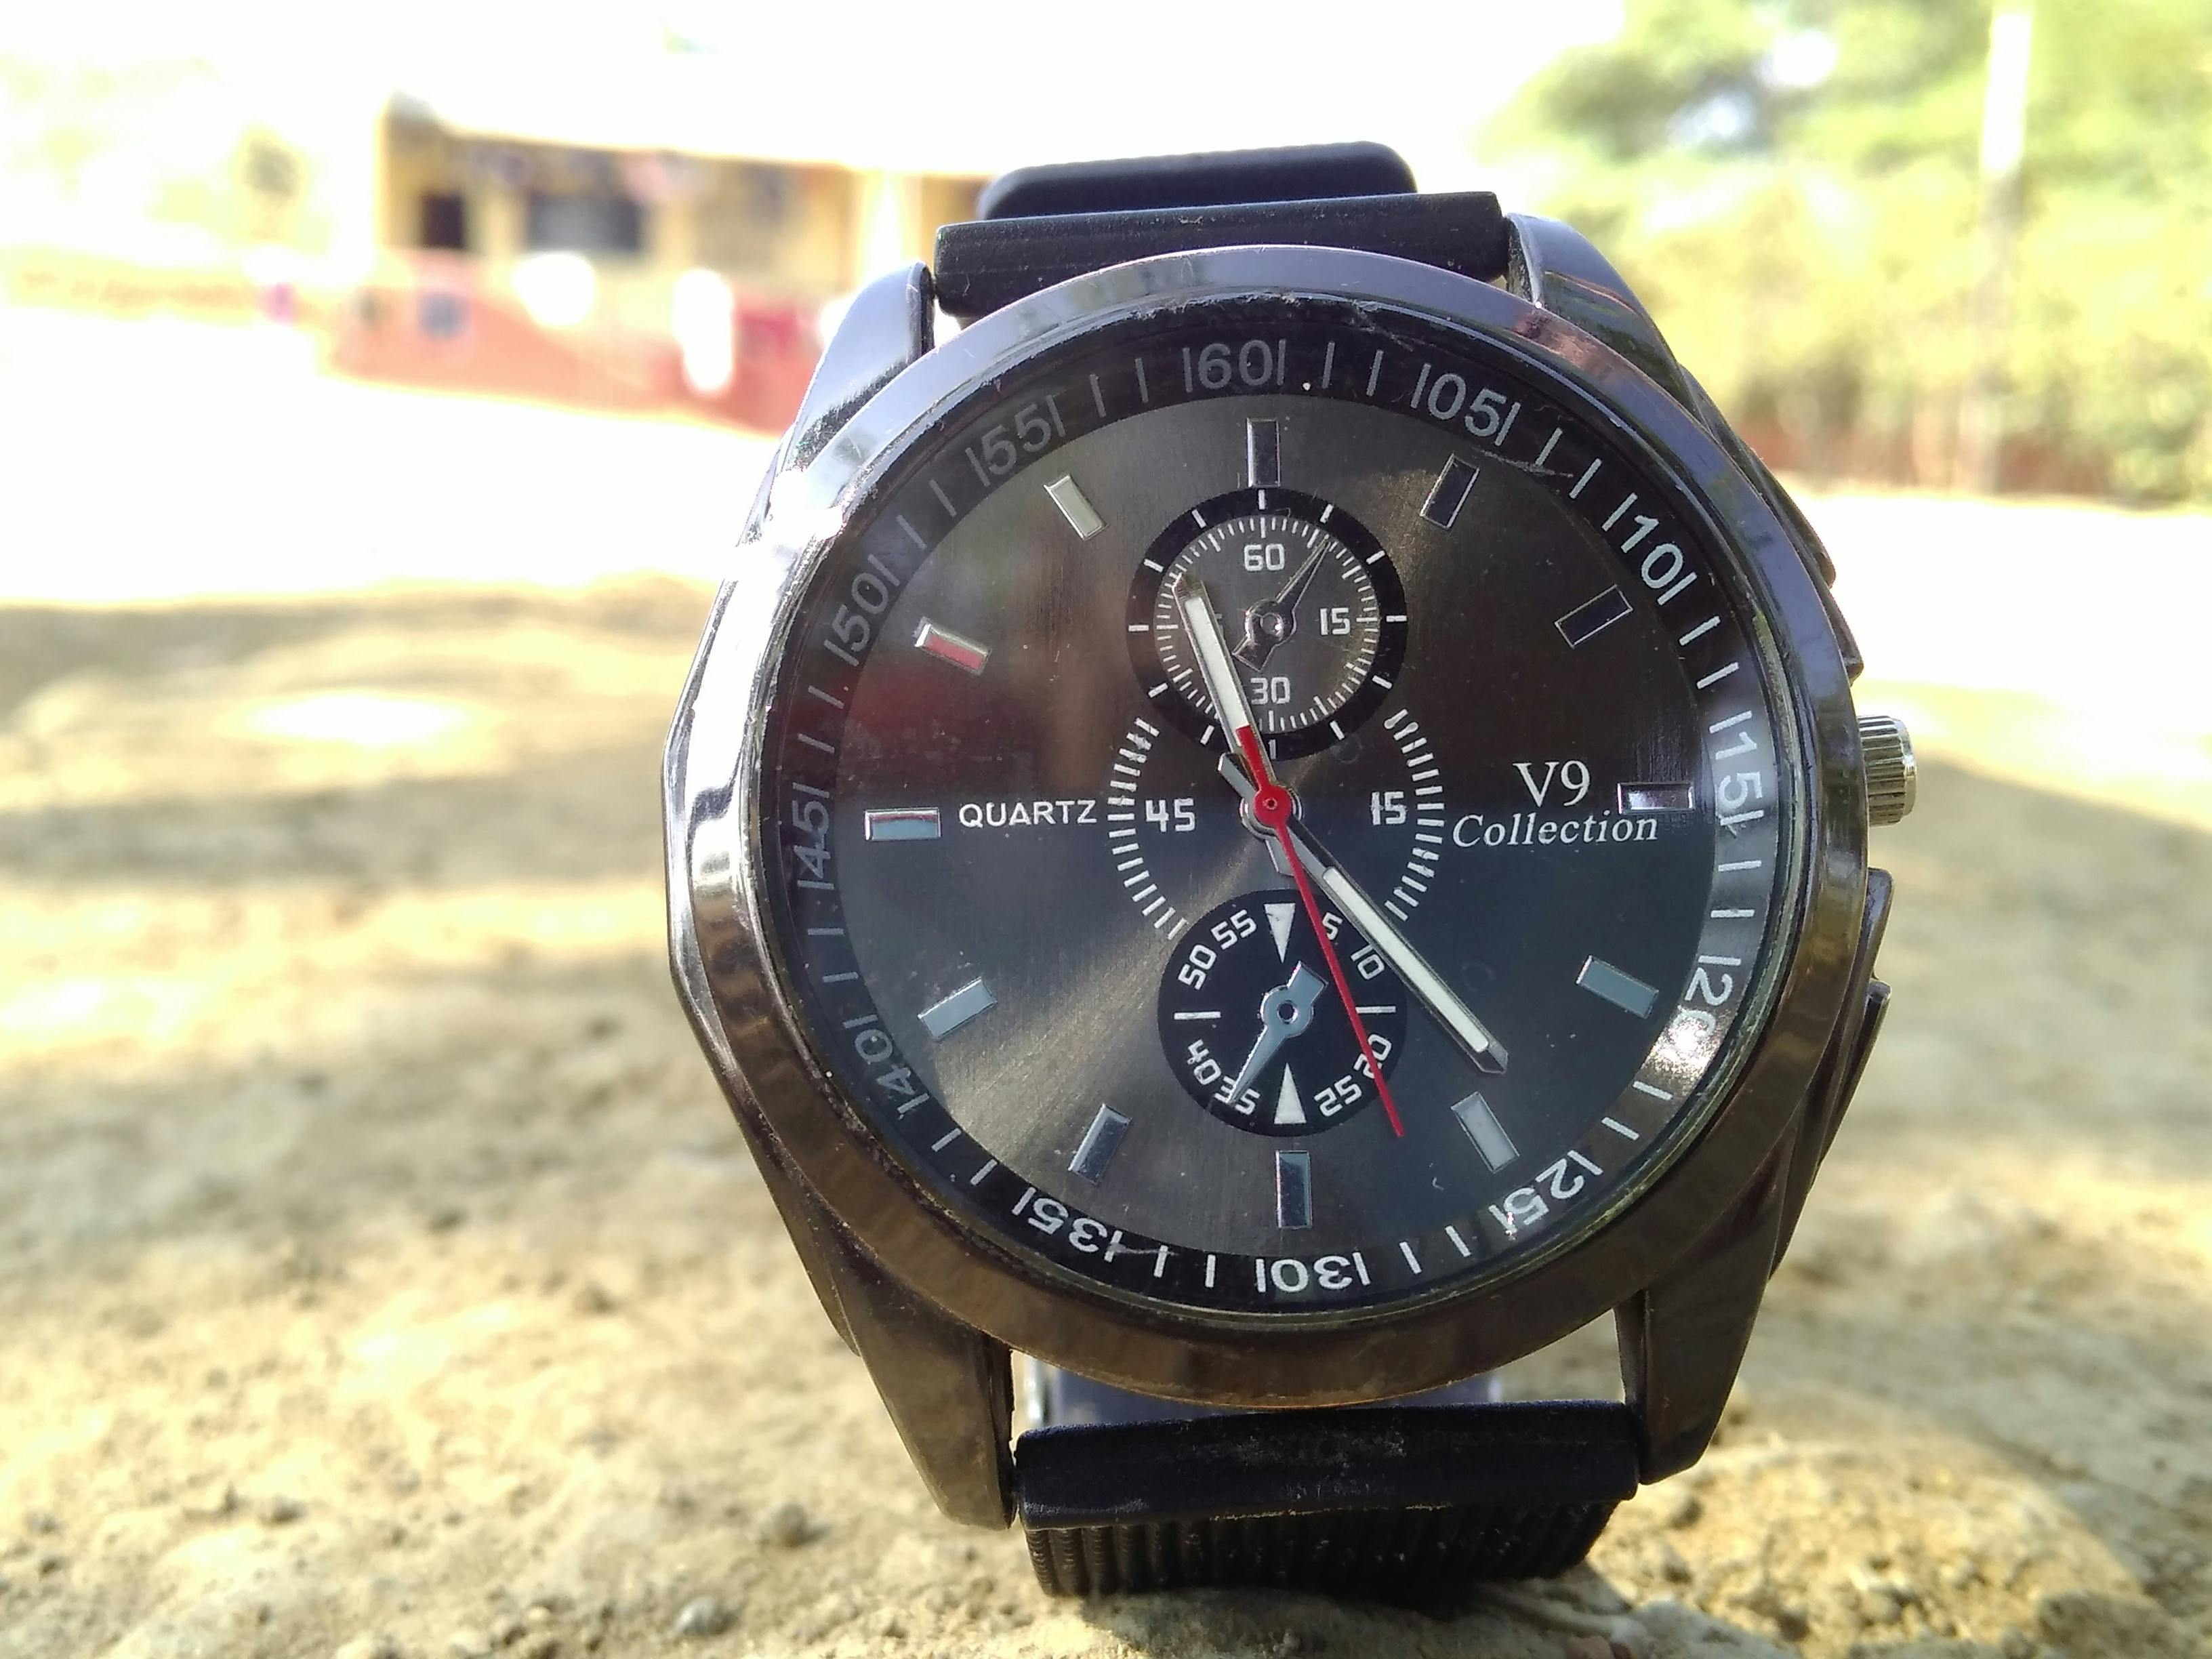 Free stock photo of Analog watch, watch, wrist watch